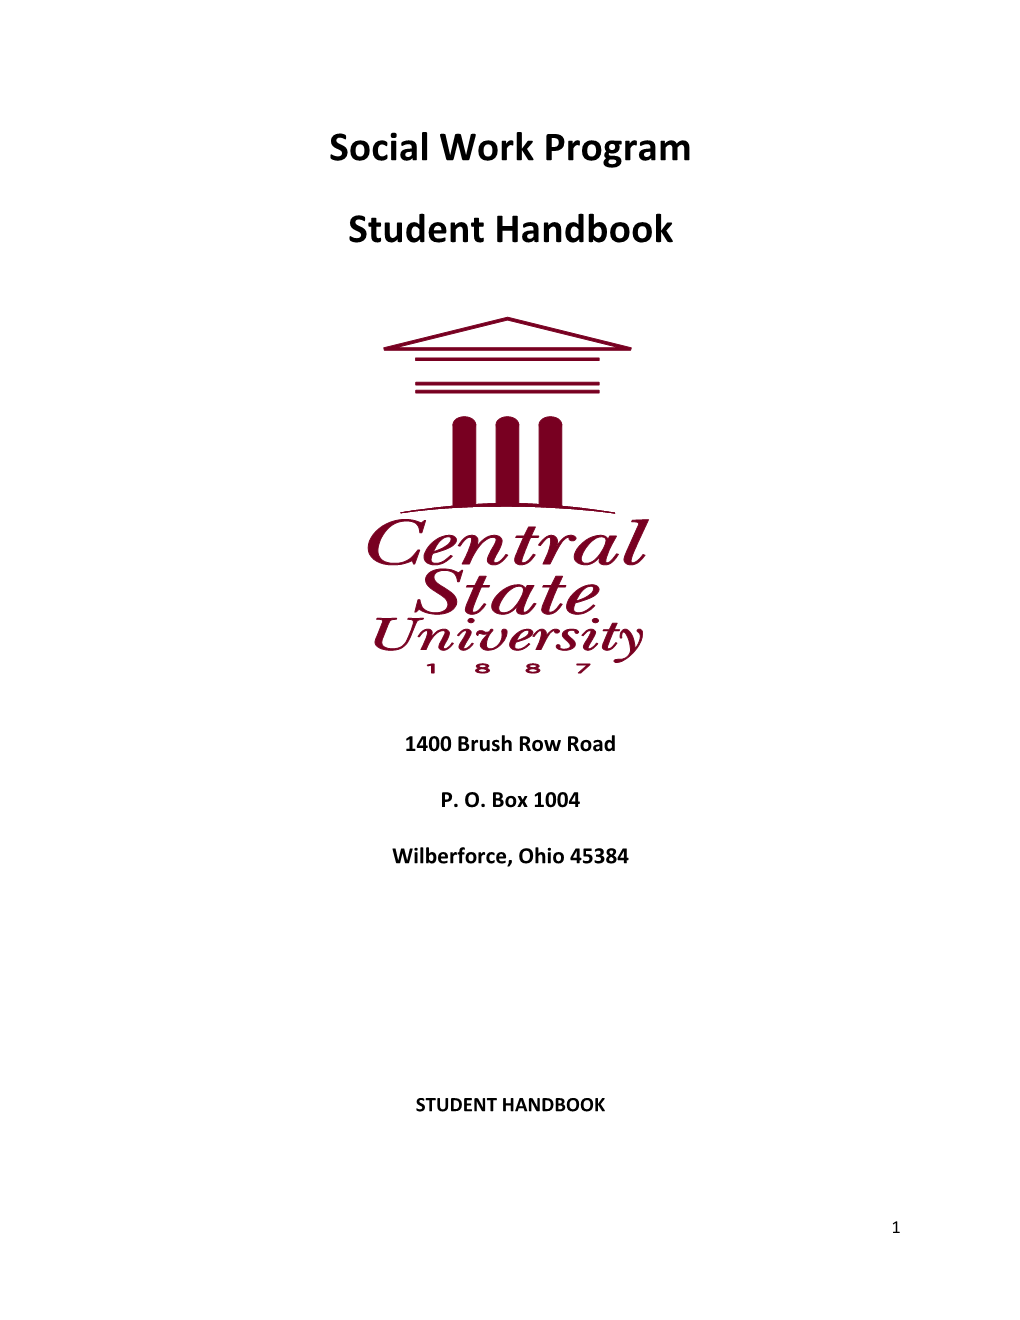 Social Work Program Student Handbook